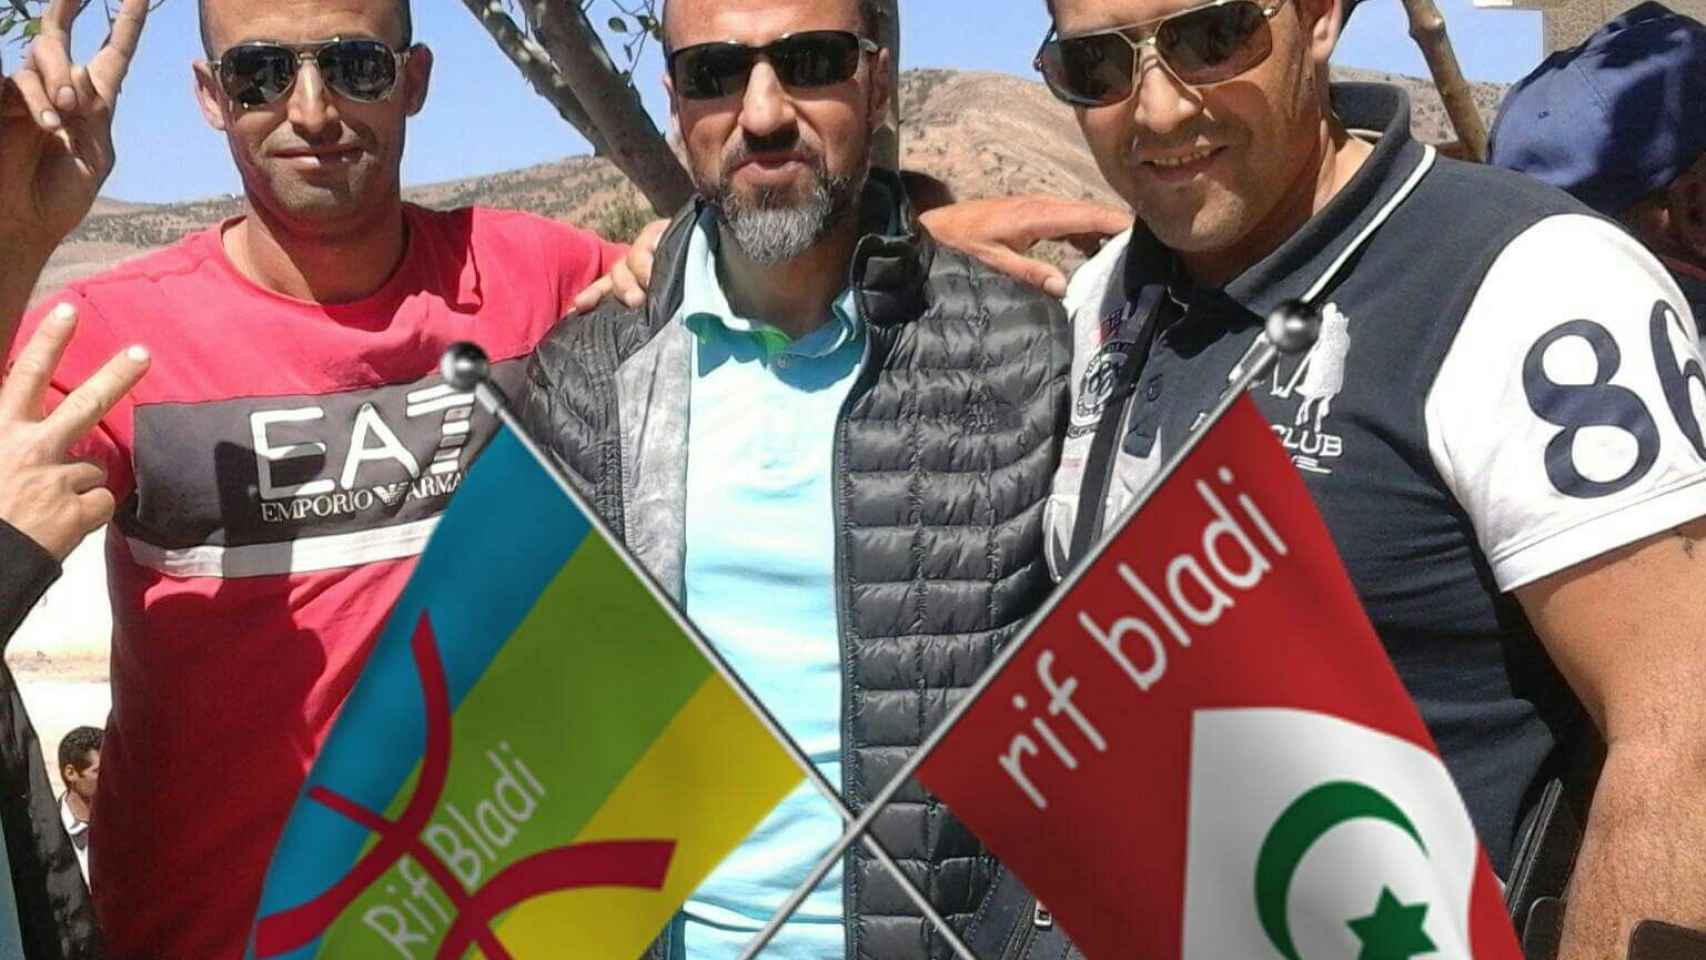 A la izquierda, la bandera amazigh (bereber), a la derecha la de la extinta República del Rif con la leyenda Rif Bladi (Rif mi país)